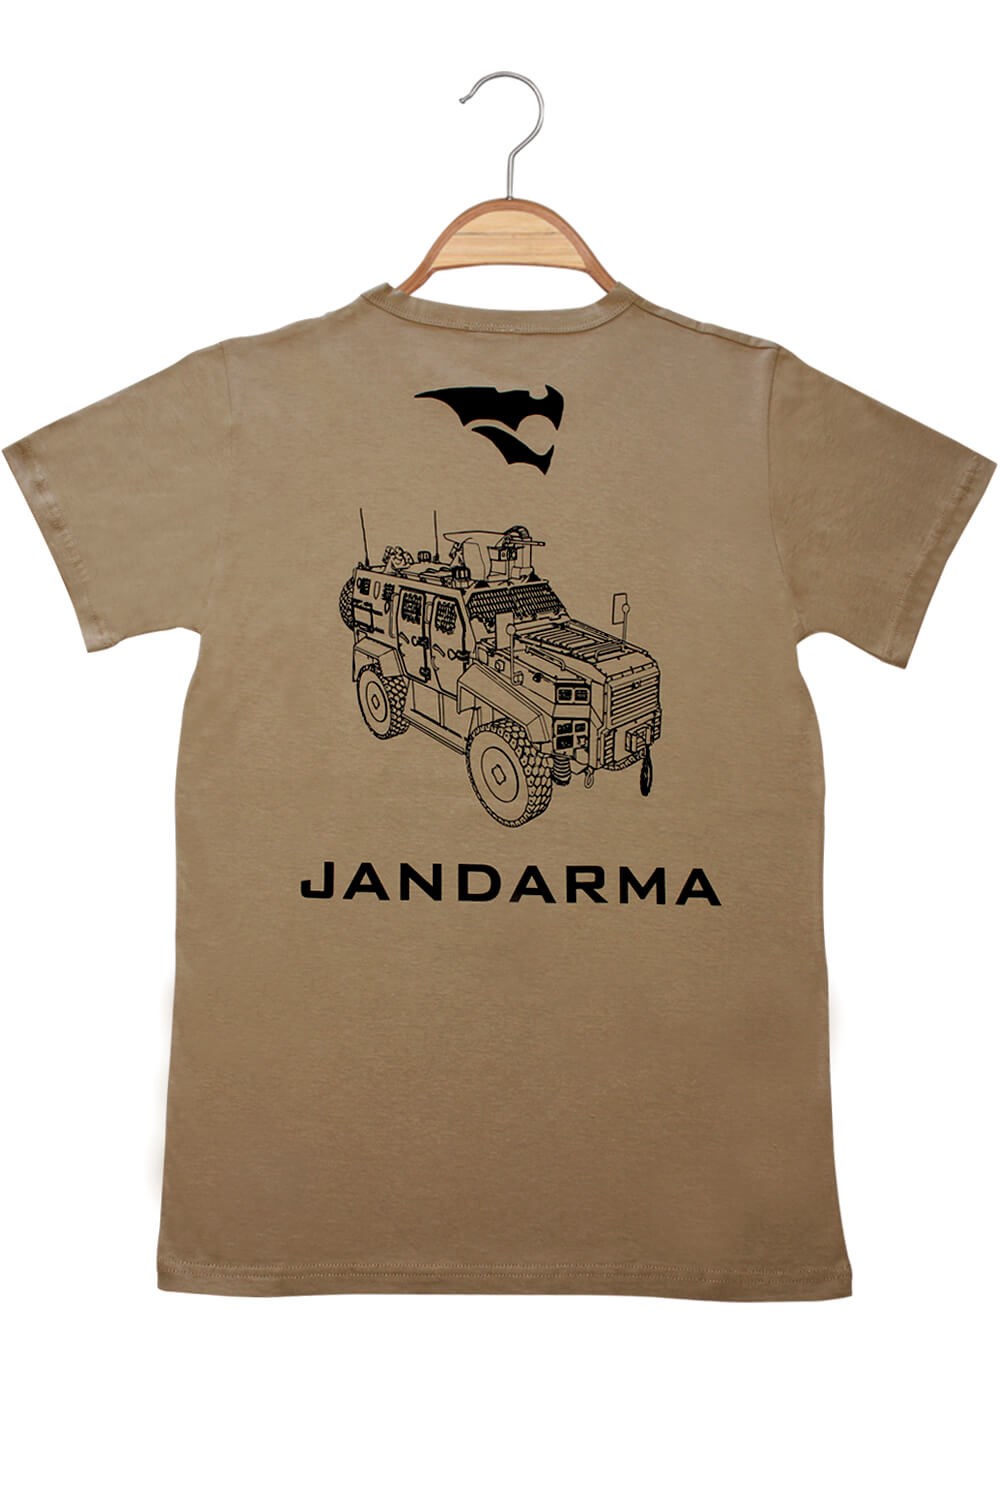 Turkish Jandarma(Turkish Gendarmerie) Tshirt - TurkishDefenceStore